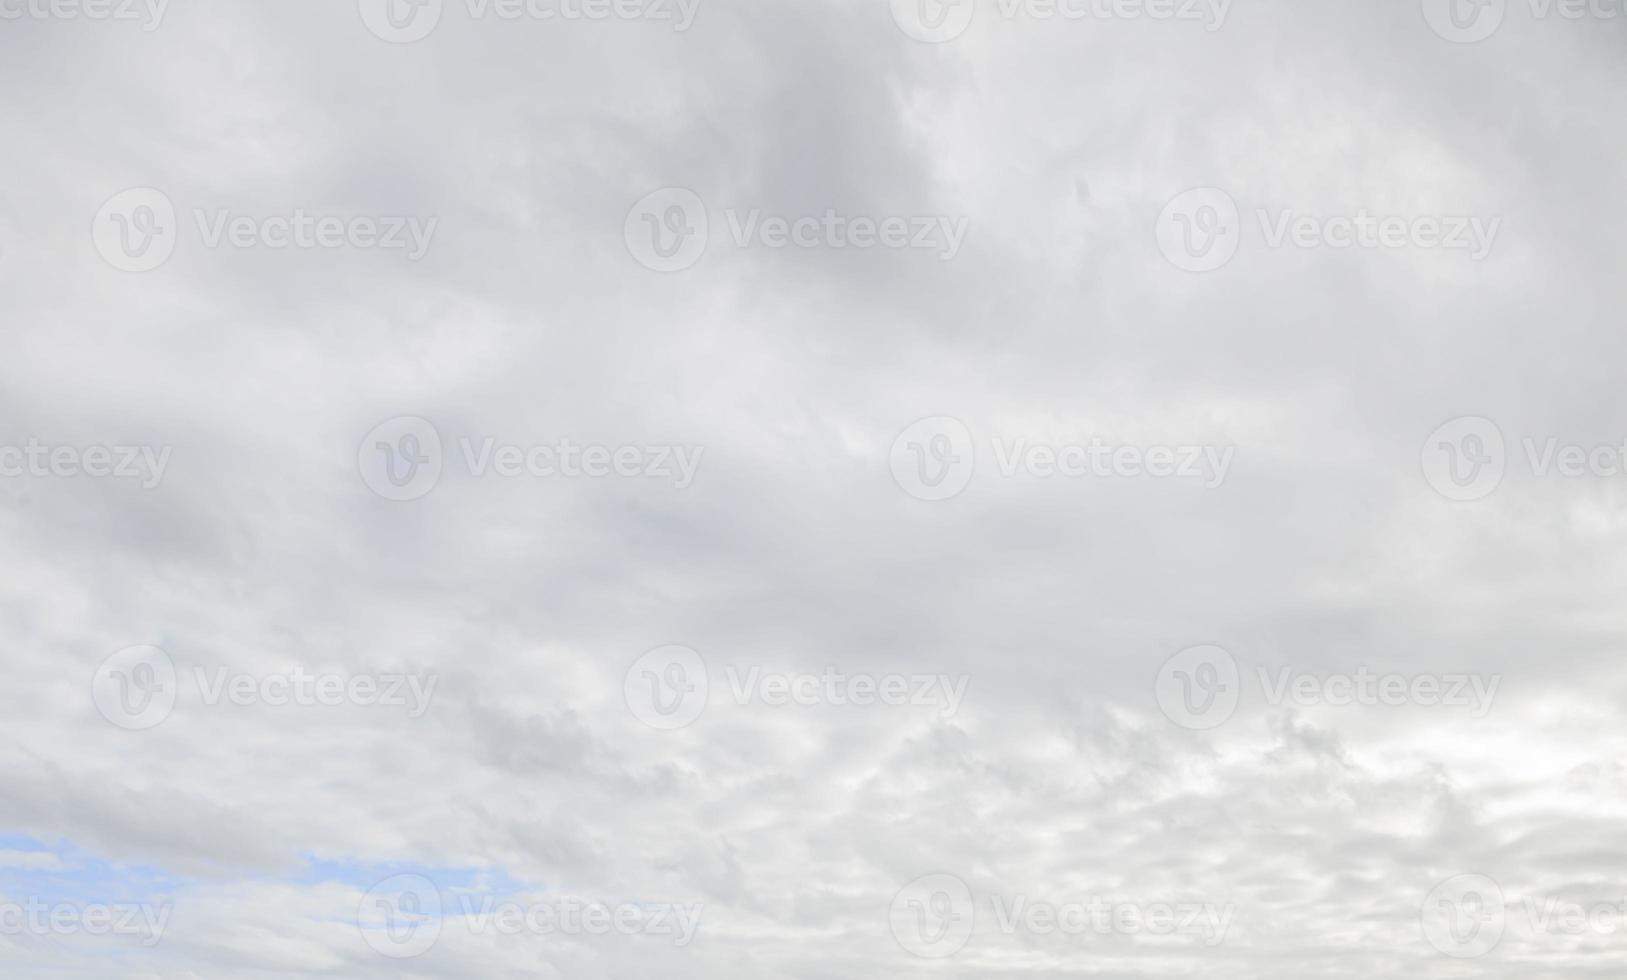 Bild eines dunklen und bewölkten Himmels während des Tages foto